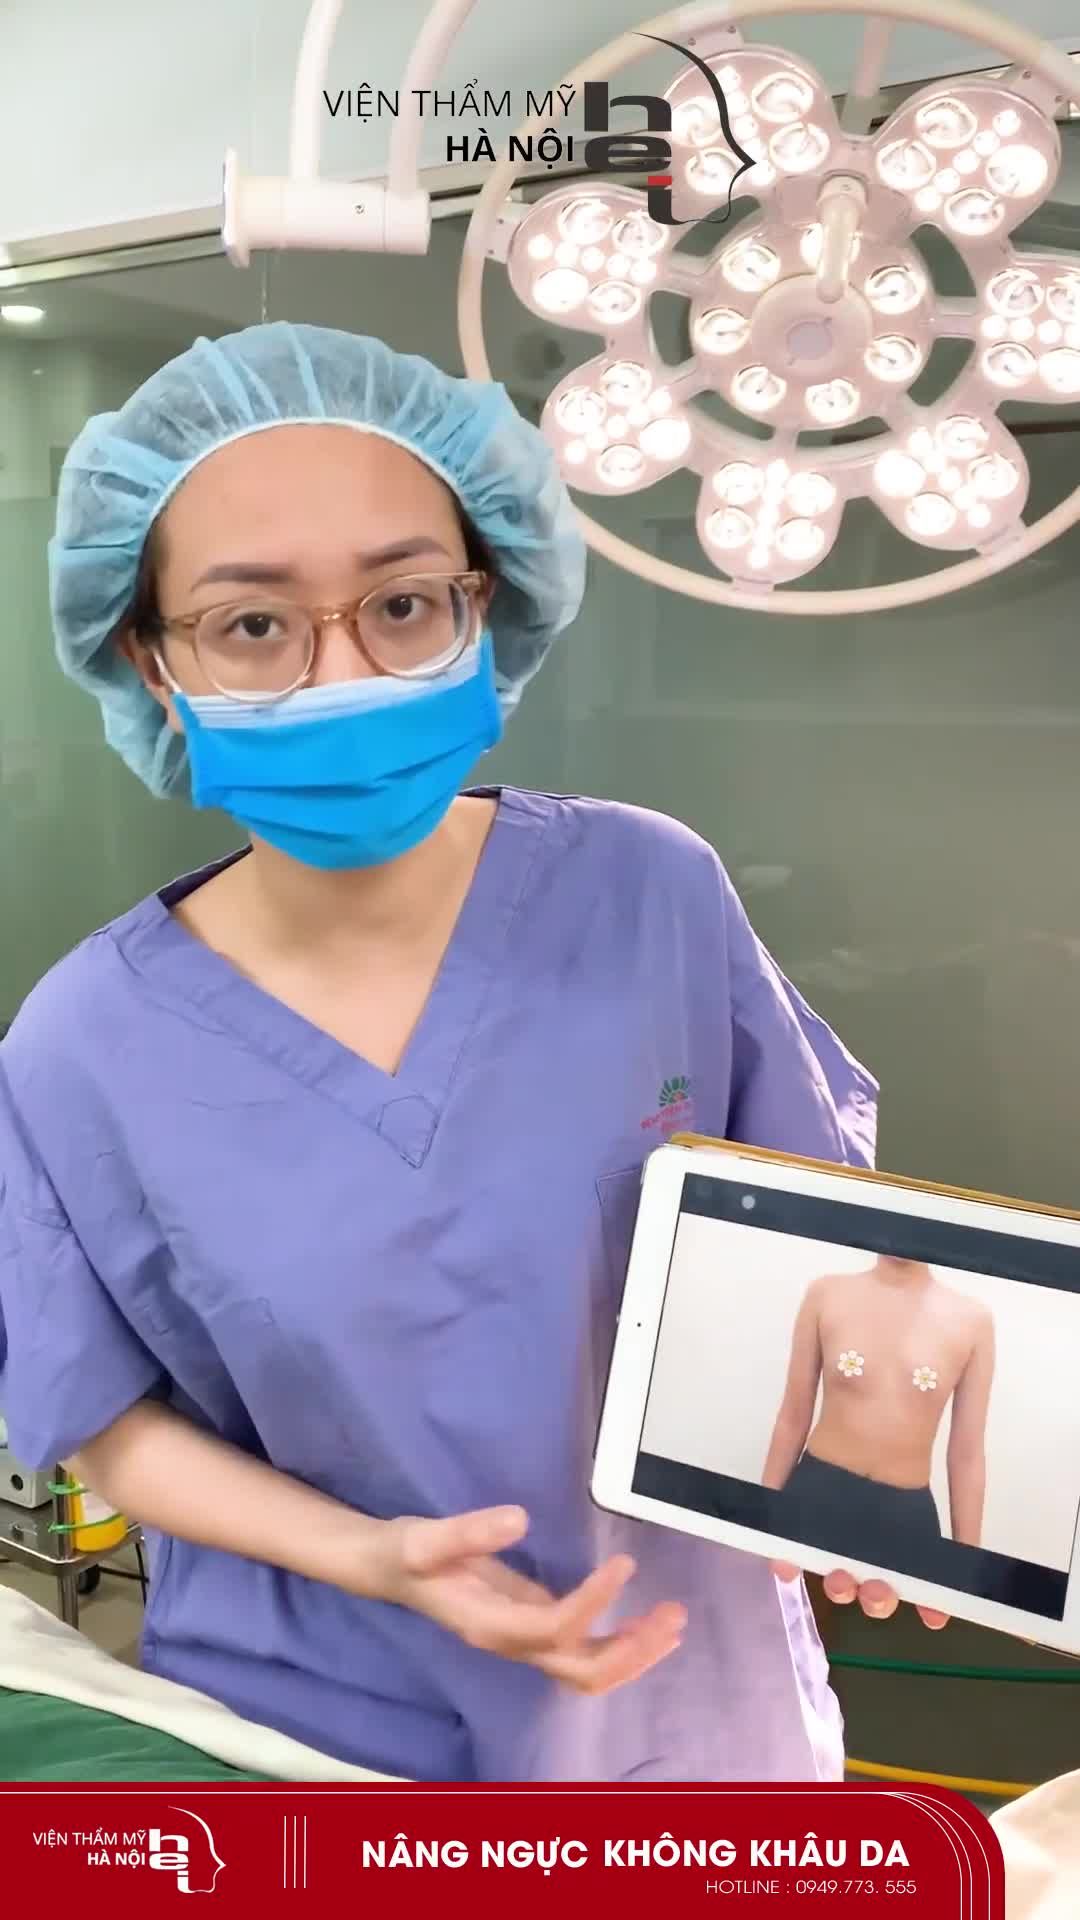 Giảm ngay 10% cho mọi dịch vụ nâng ngực không khâu da khi đến với Viện thẩm mỹ Hà Nội!